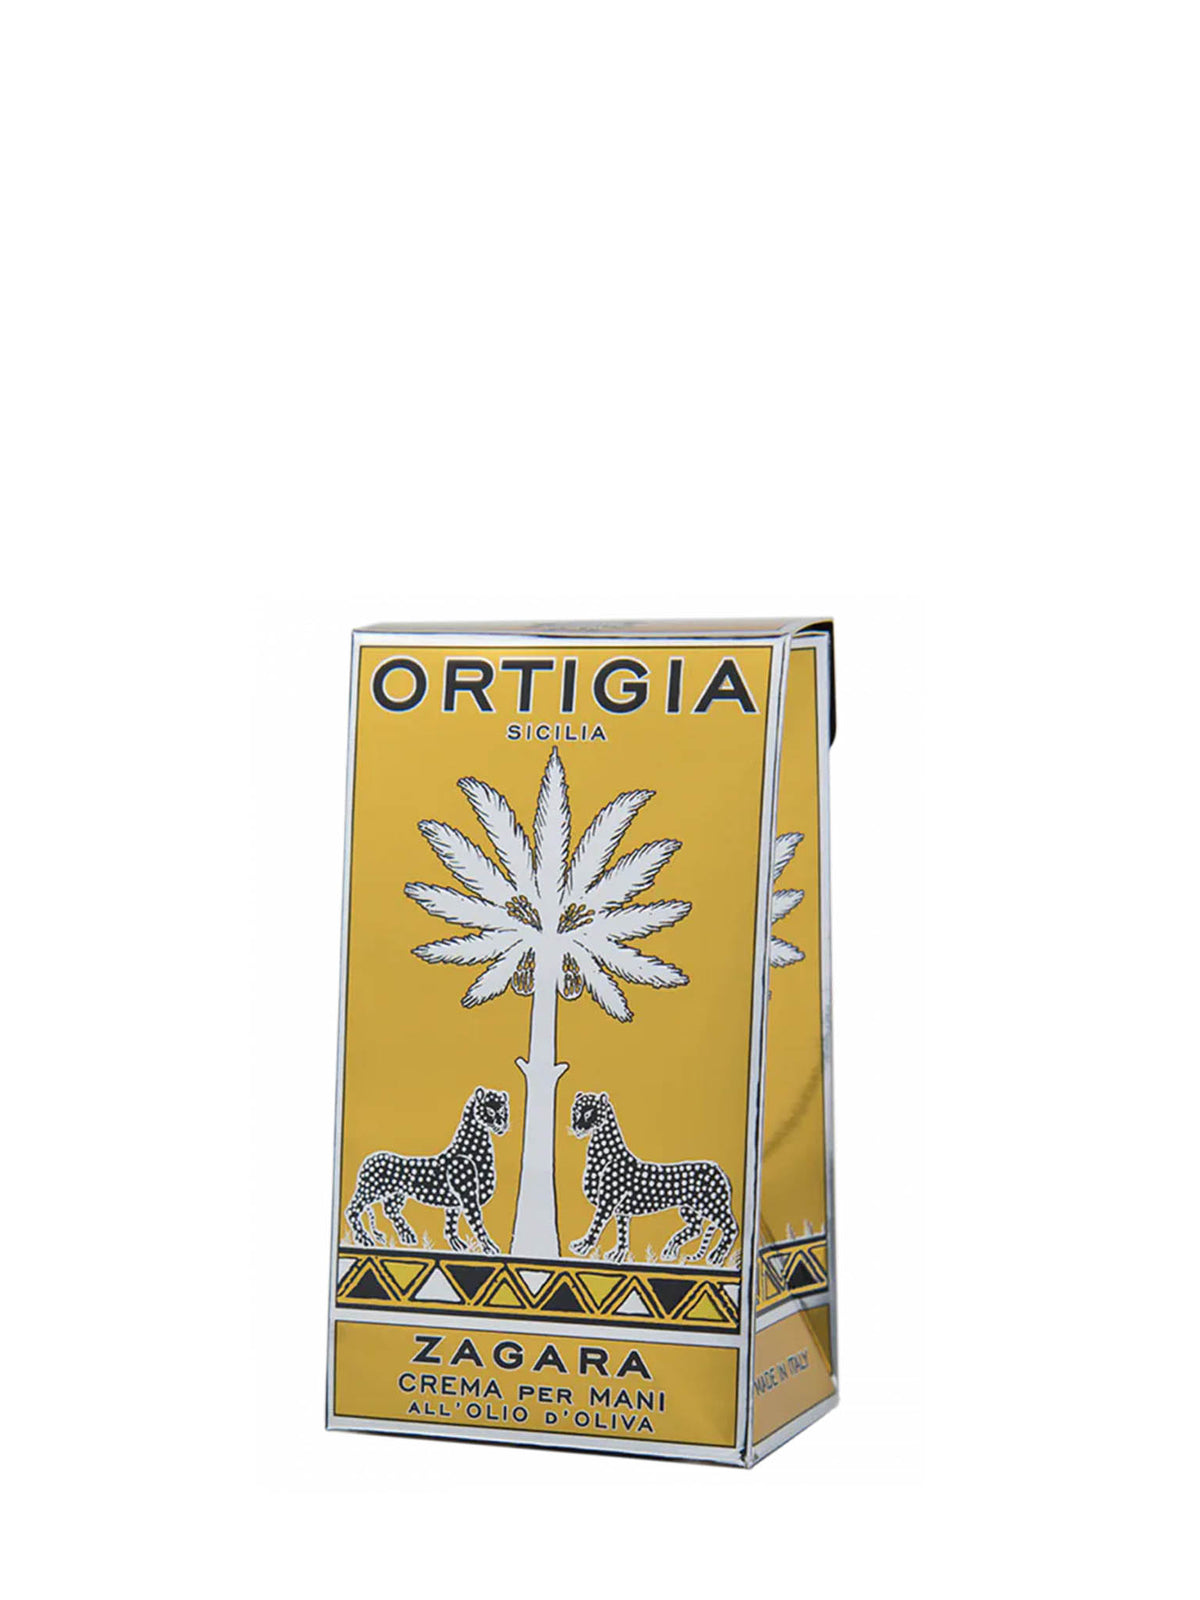 Ortigia Zagara Hand Cream Packaging Cutout